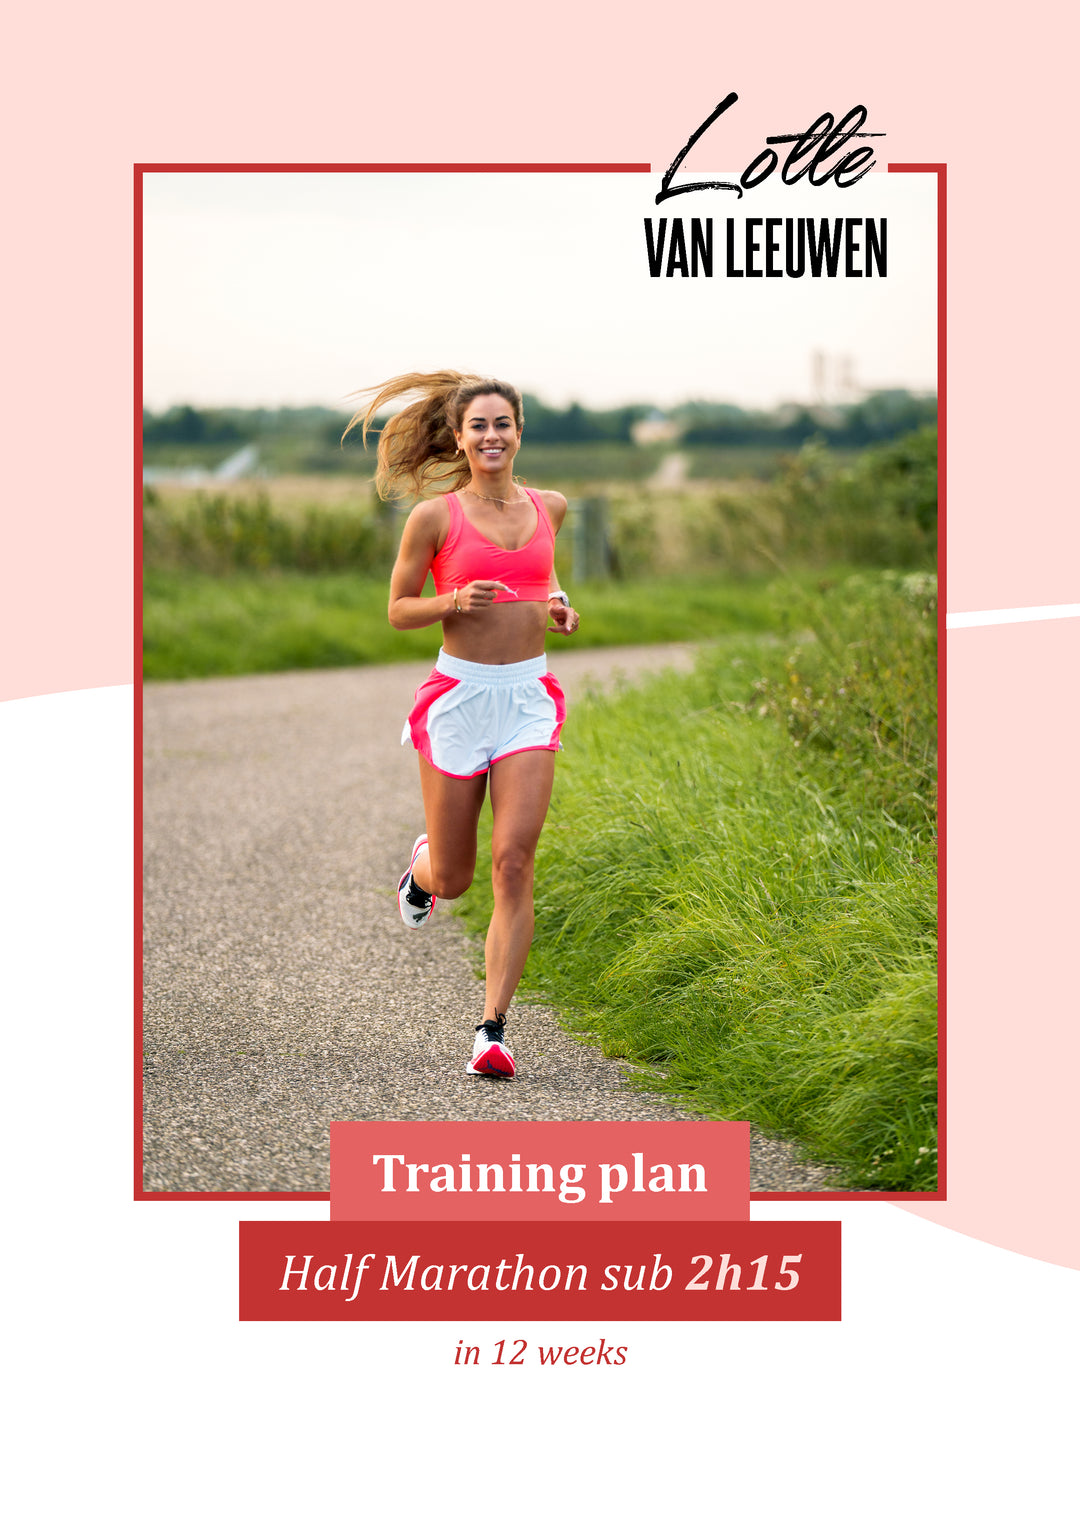 Trainingsschema –  Halve marathon binnen 2u15